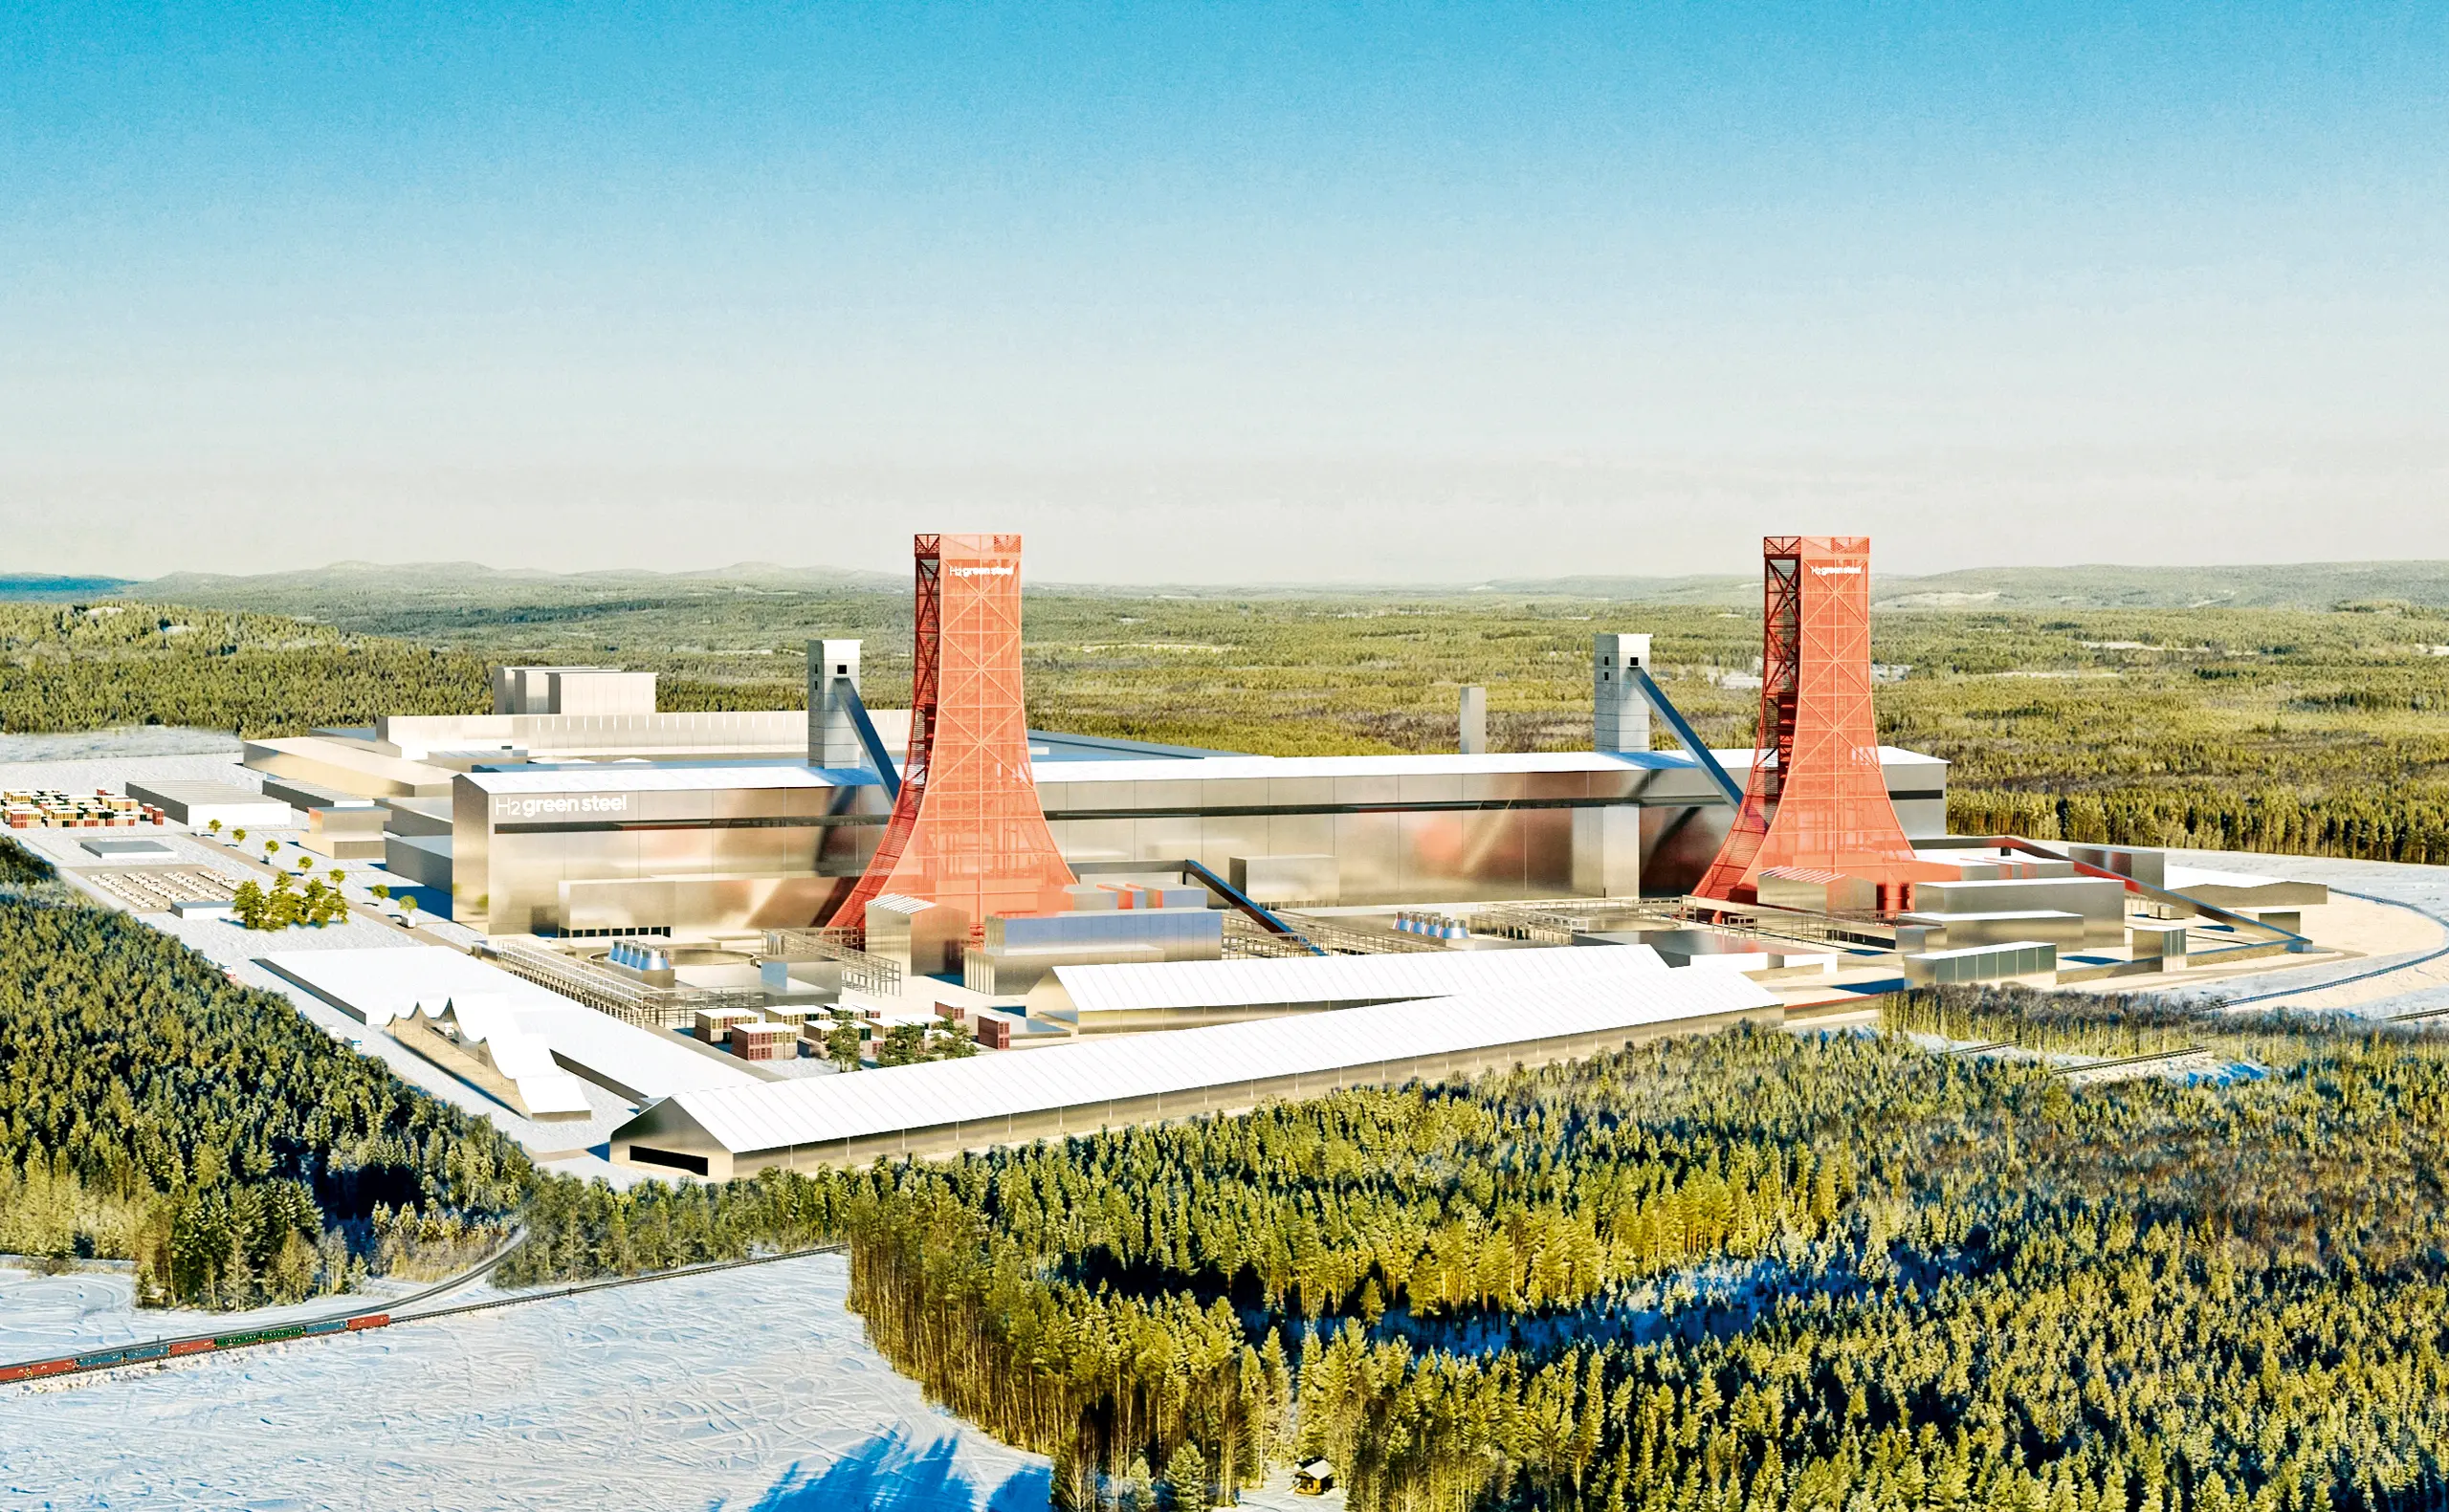 Grünstahl.&nbsp;Bis 2030 soll das H2GS-Werk in Nordschweden, das so aussehen soll wie auf diesem Bild, fünf Millionen Tonnen stark CO2-reduzierten Stahl herstellen.